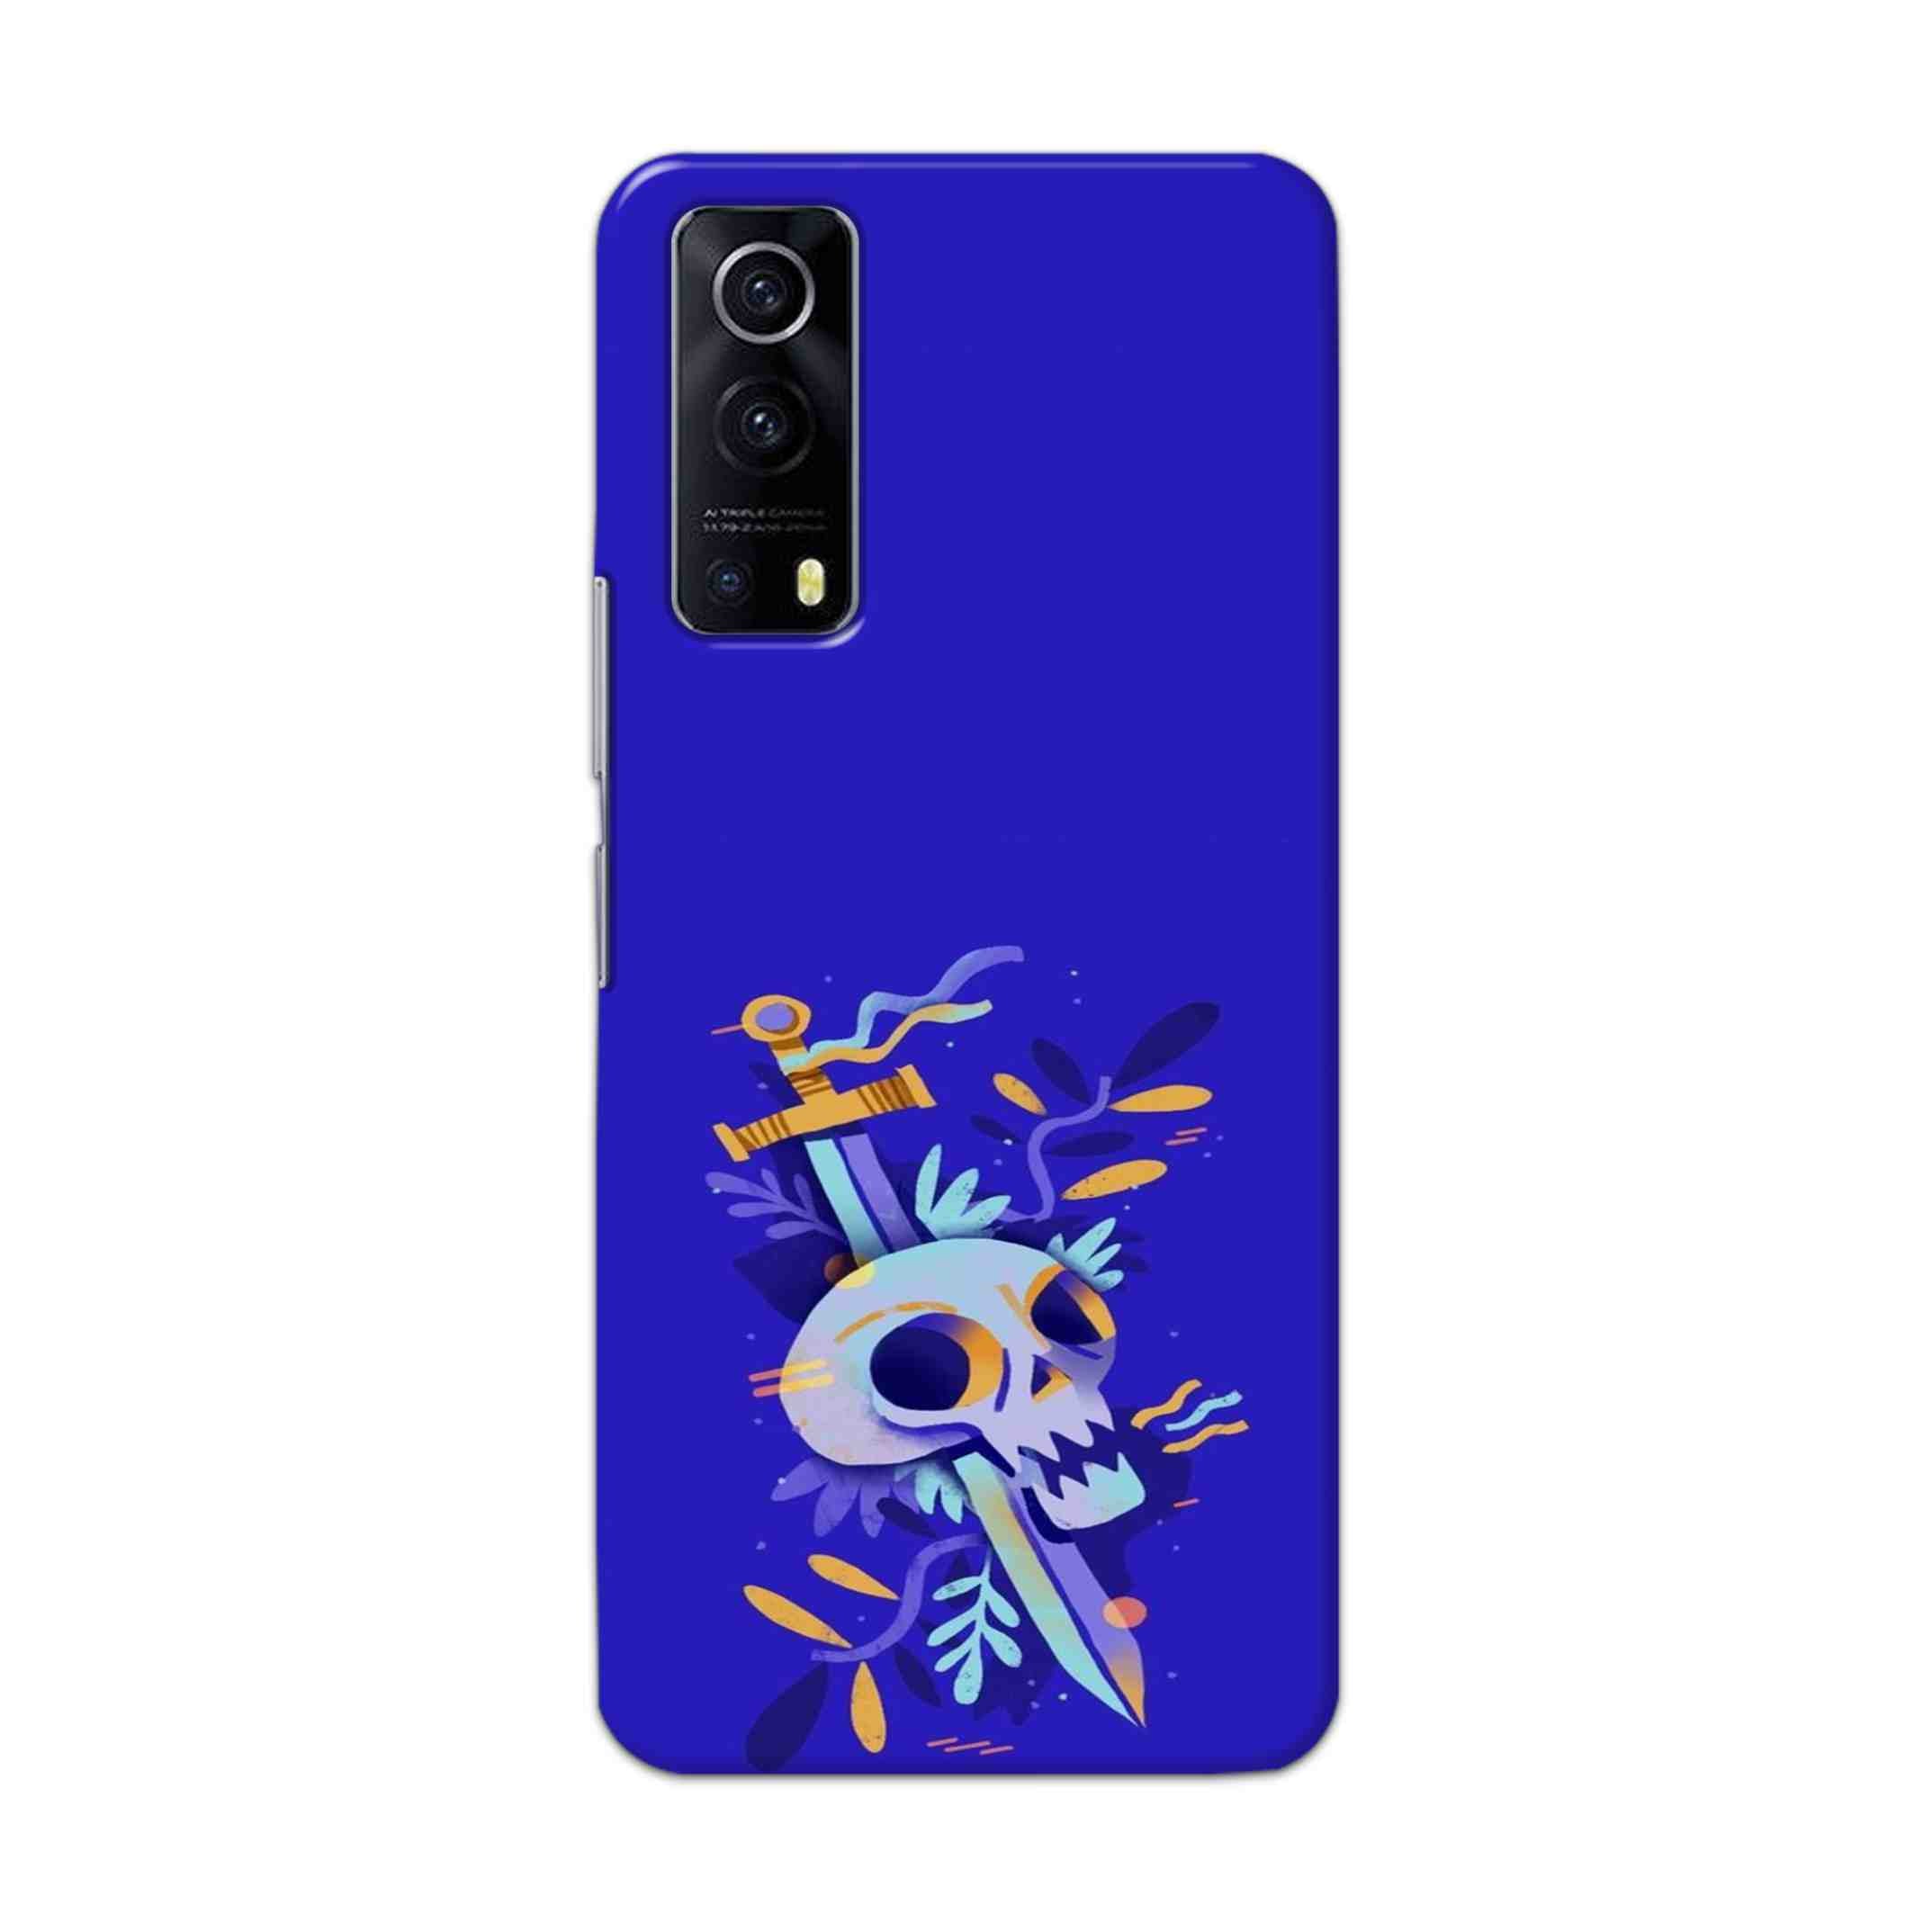 Buy Blue Skull Hard Back Mobile Phone Case Cover For Vivo IQOO Z3 Online